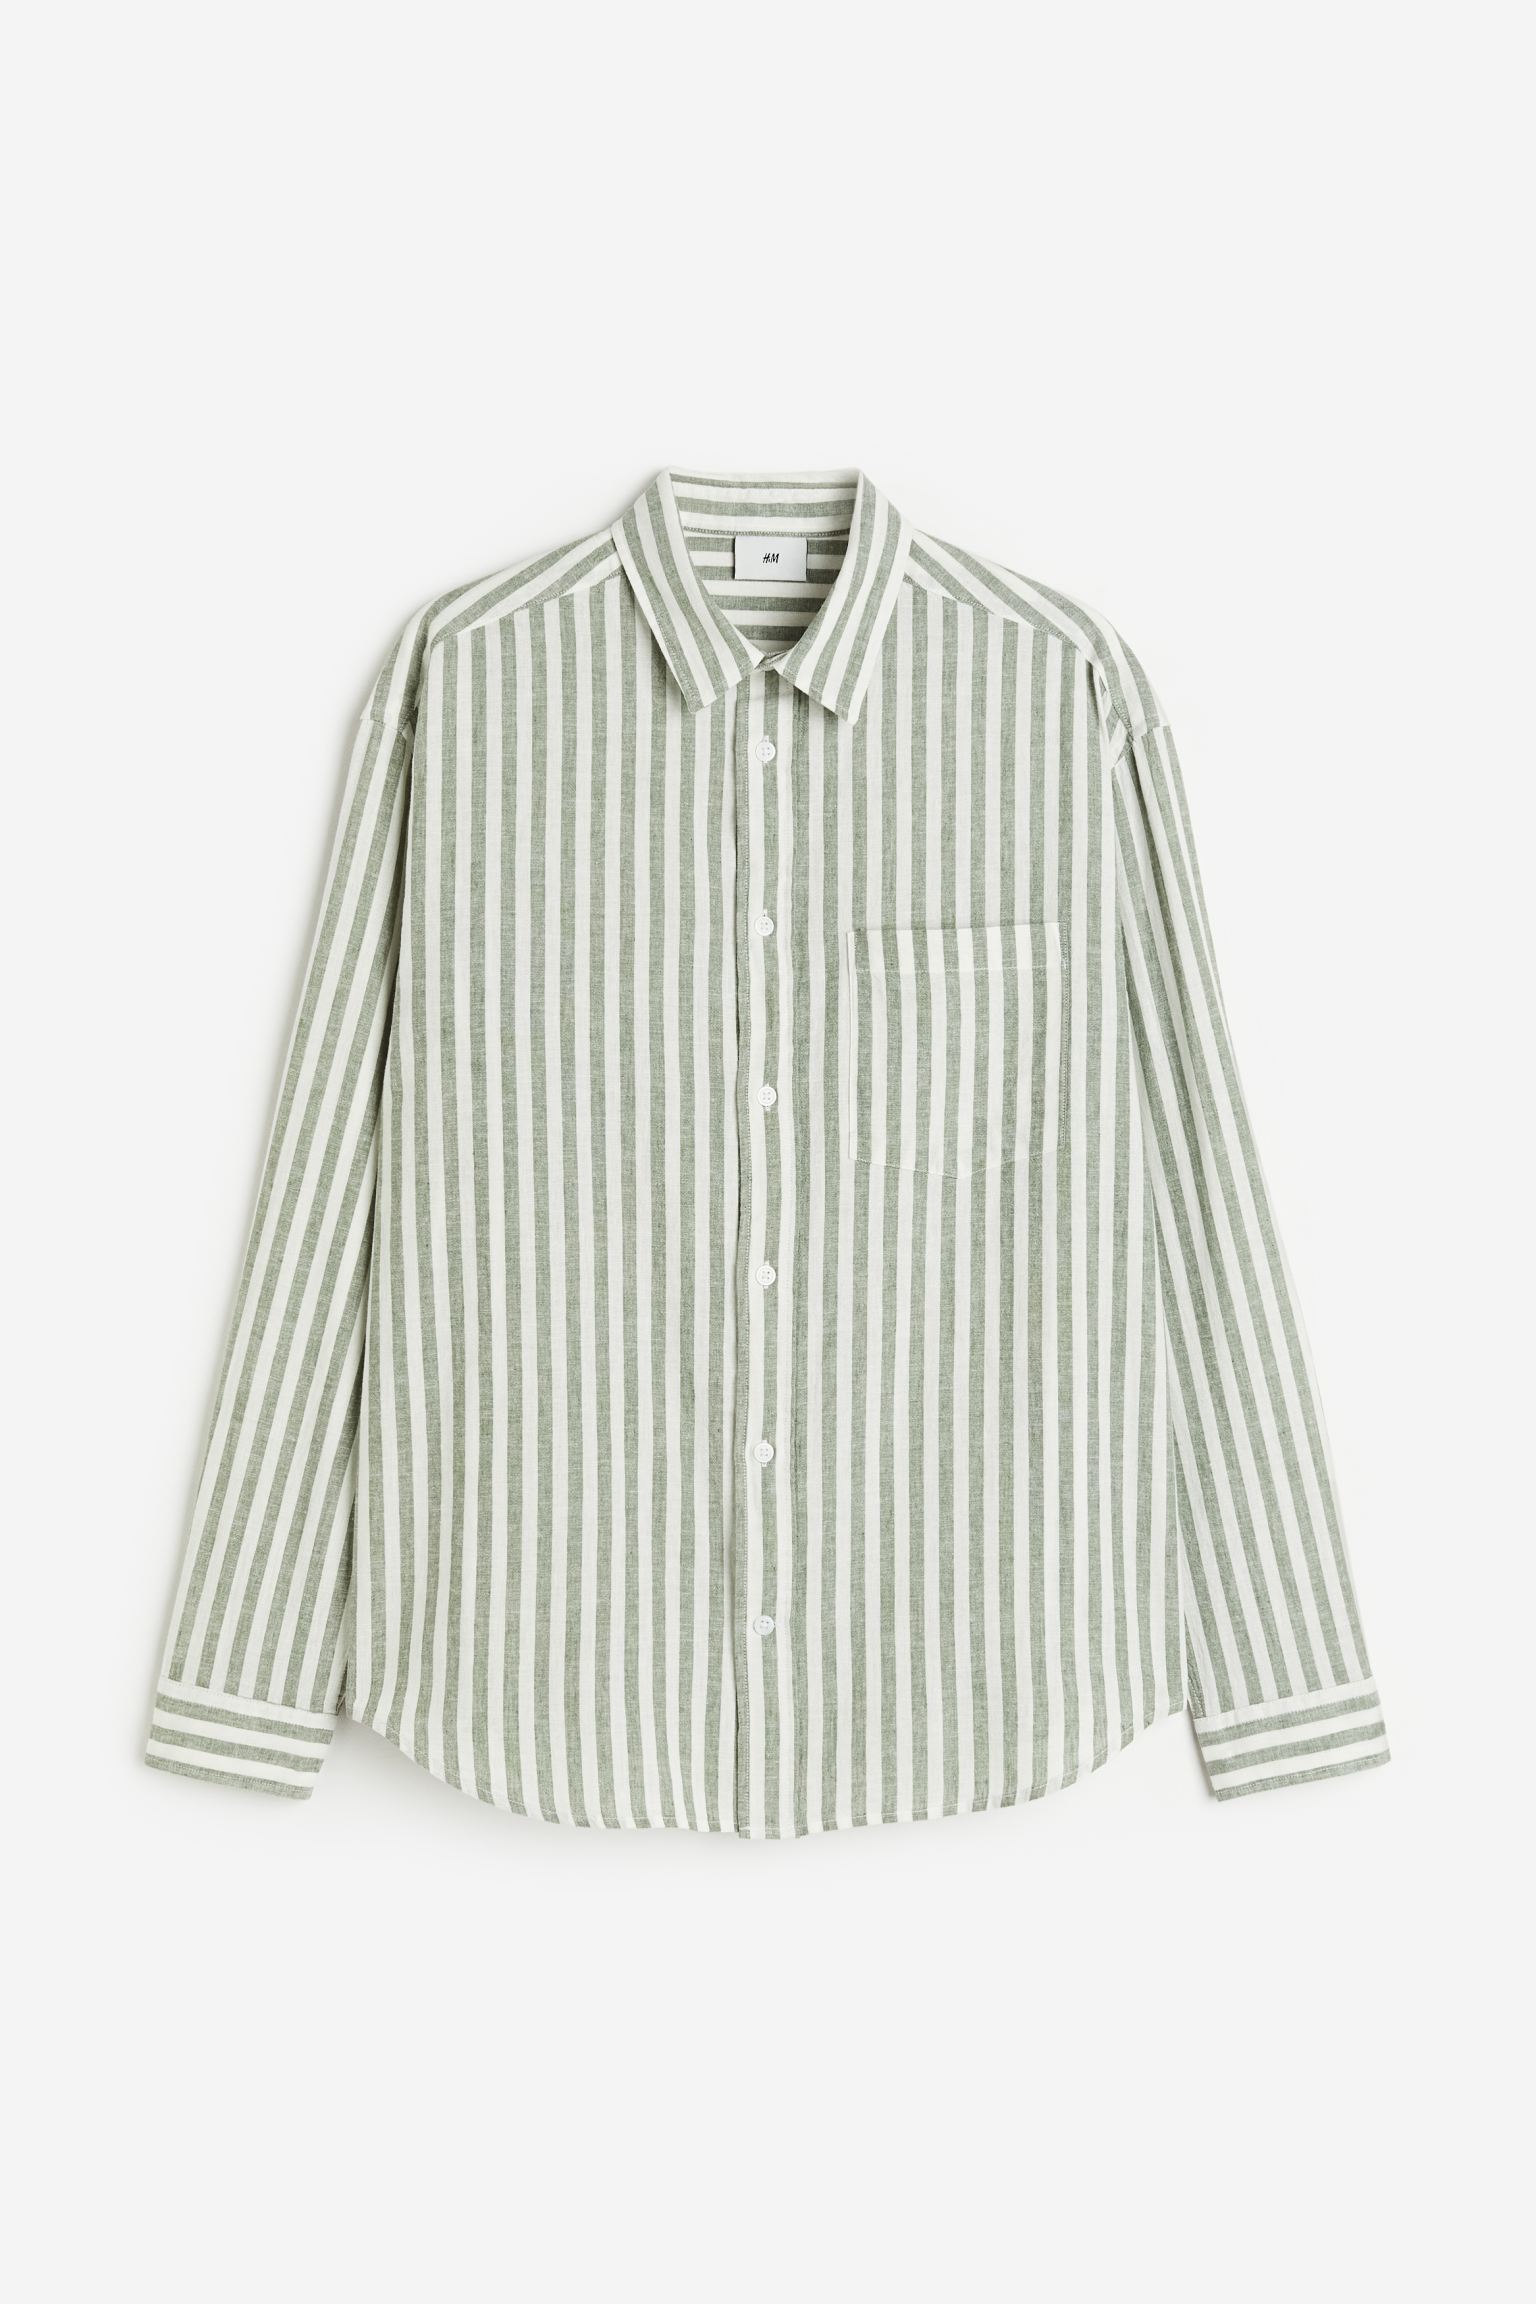 Рубашка мужская H&M 1160688006 зеленая M (доставка из-за рубежа)